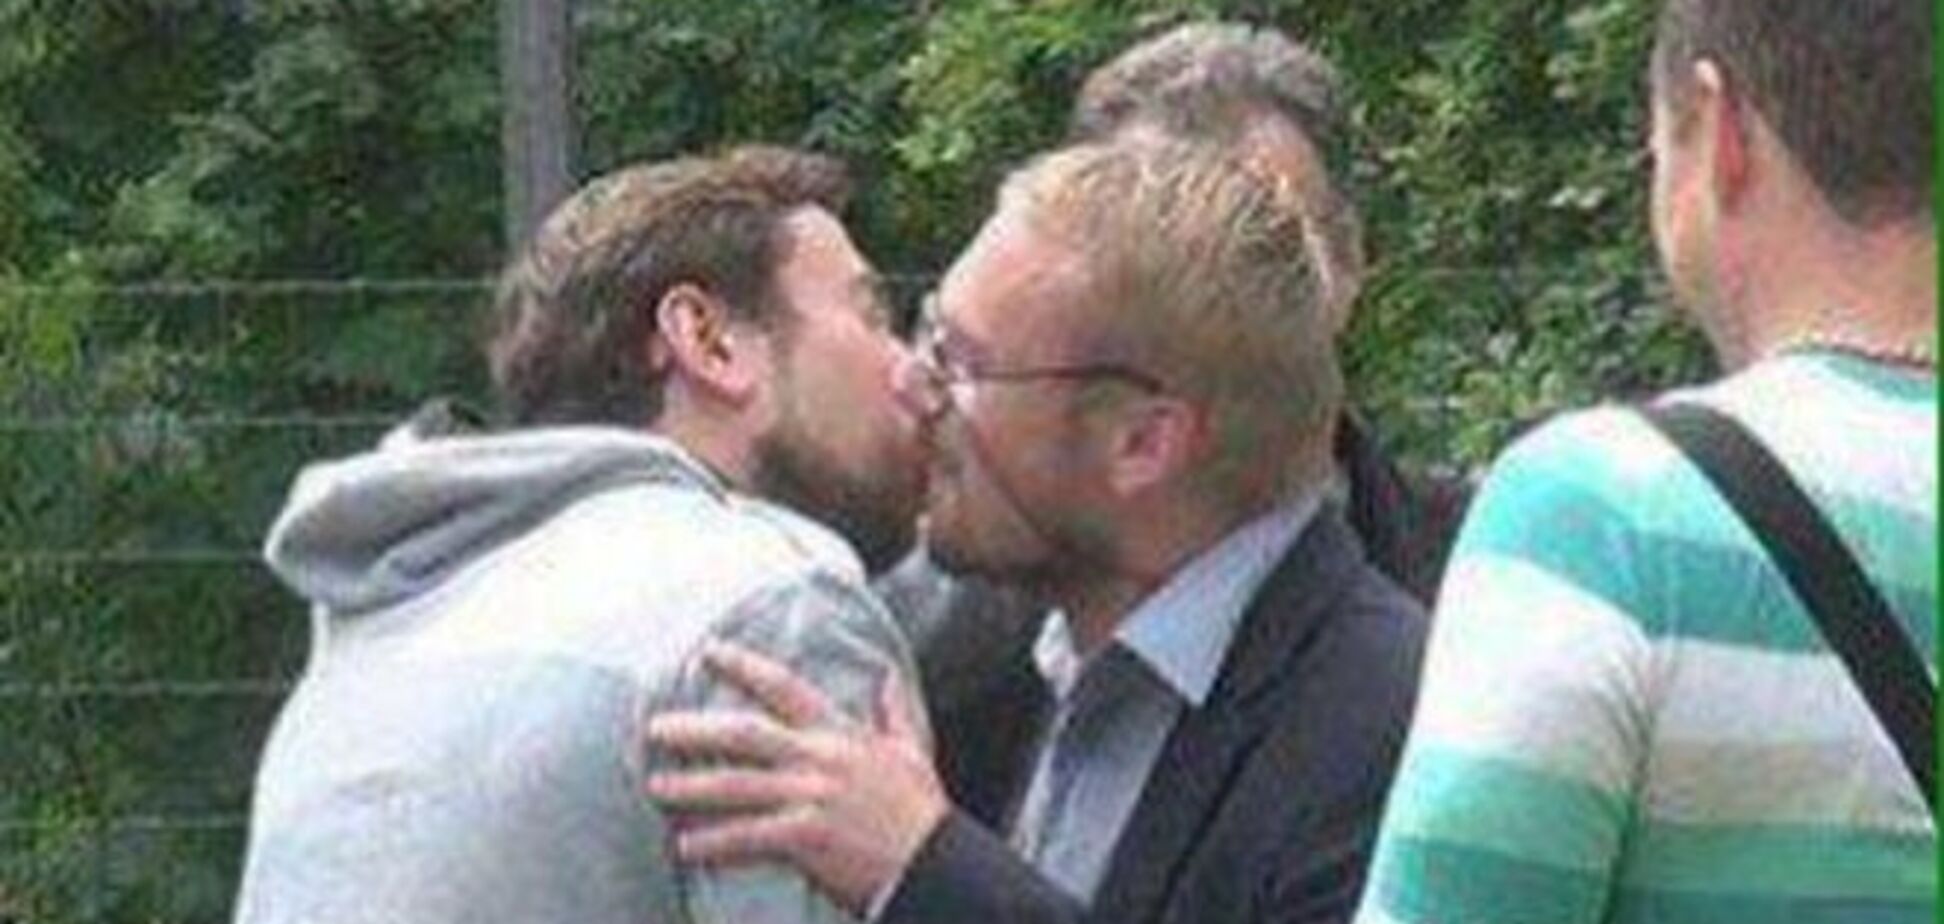 Згоди та любові: у Росії депутат-гомофоб поцілував православного активіста - фотофакт